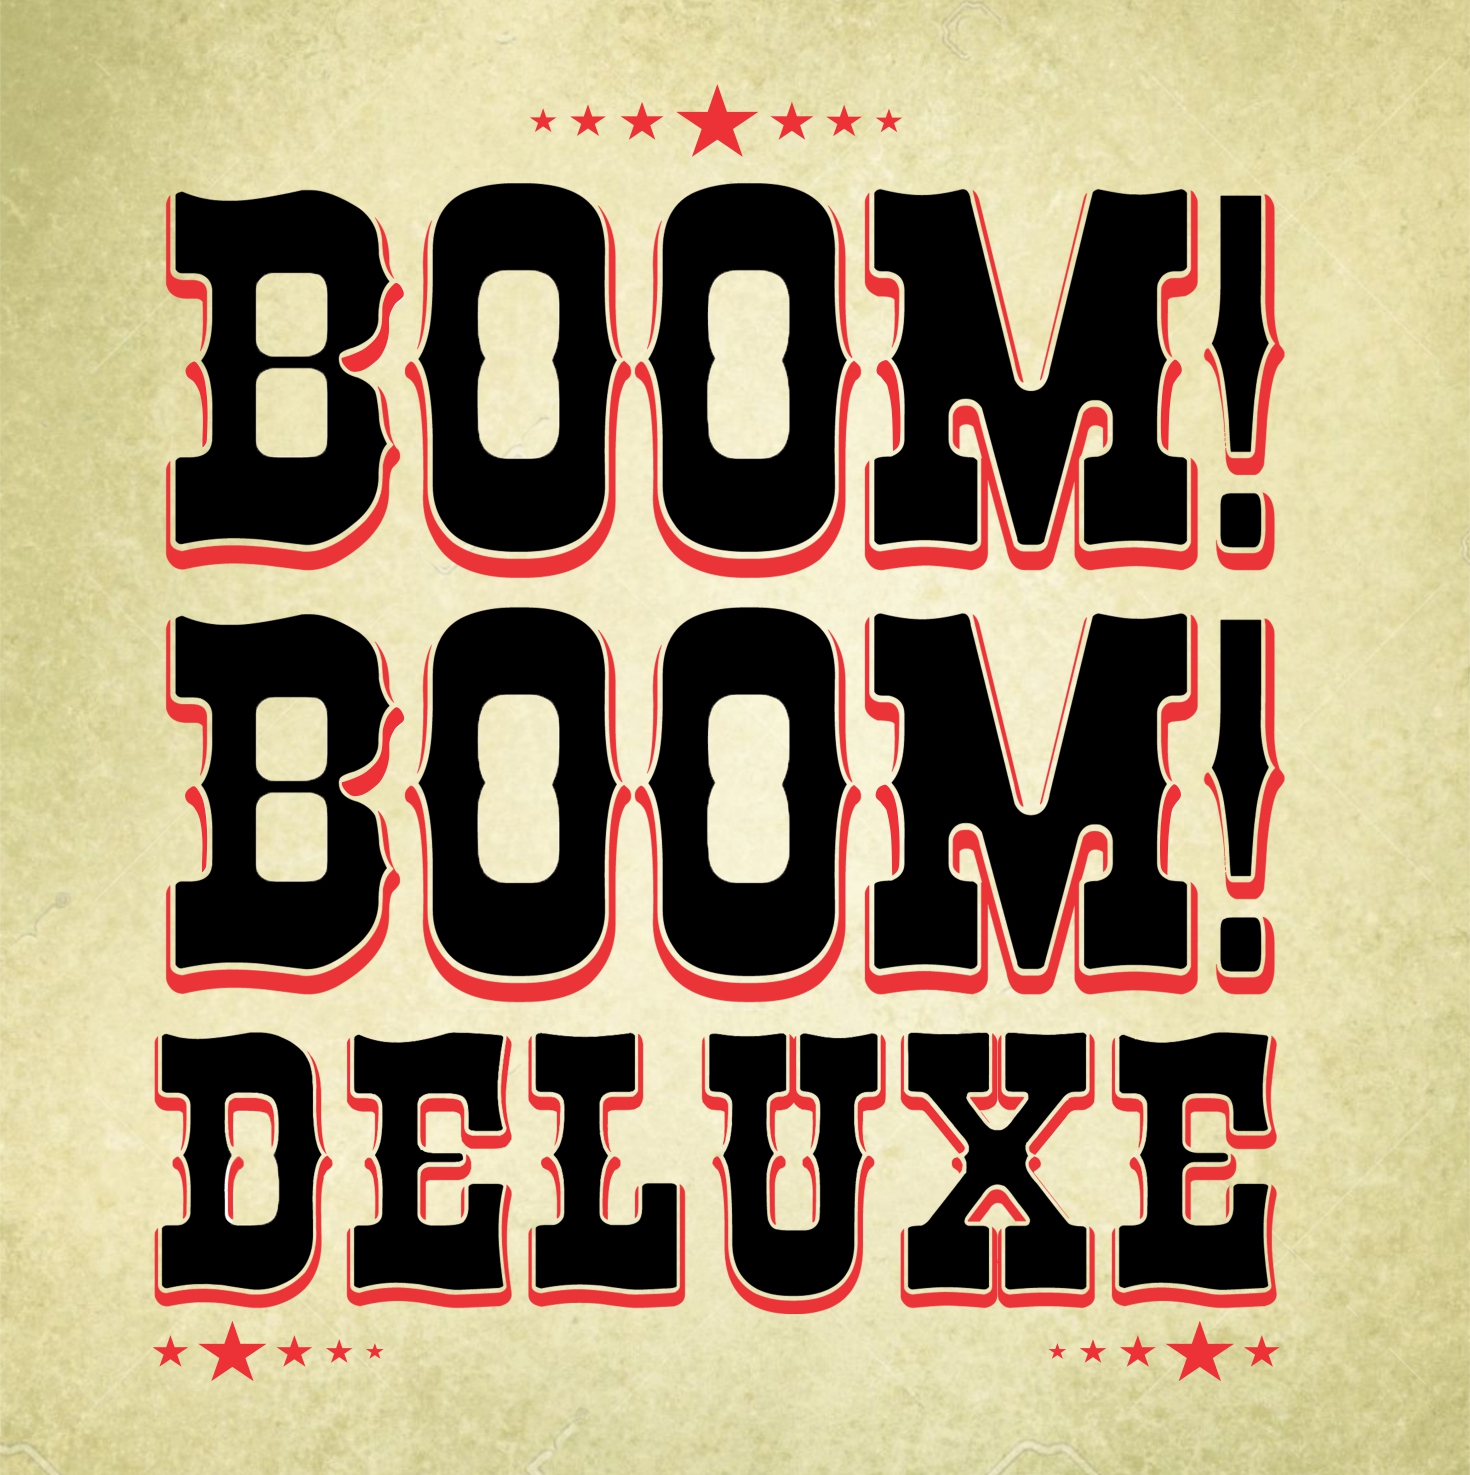 Boom! Boom! Deluxe